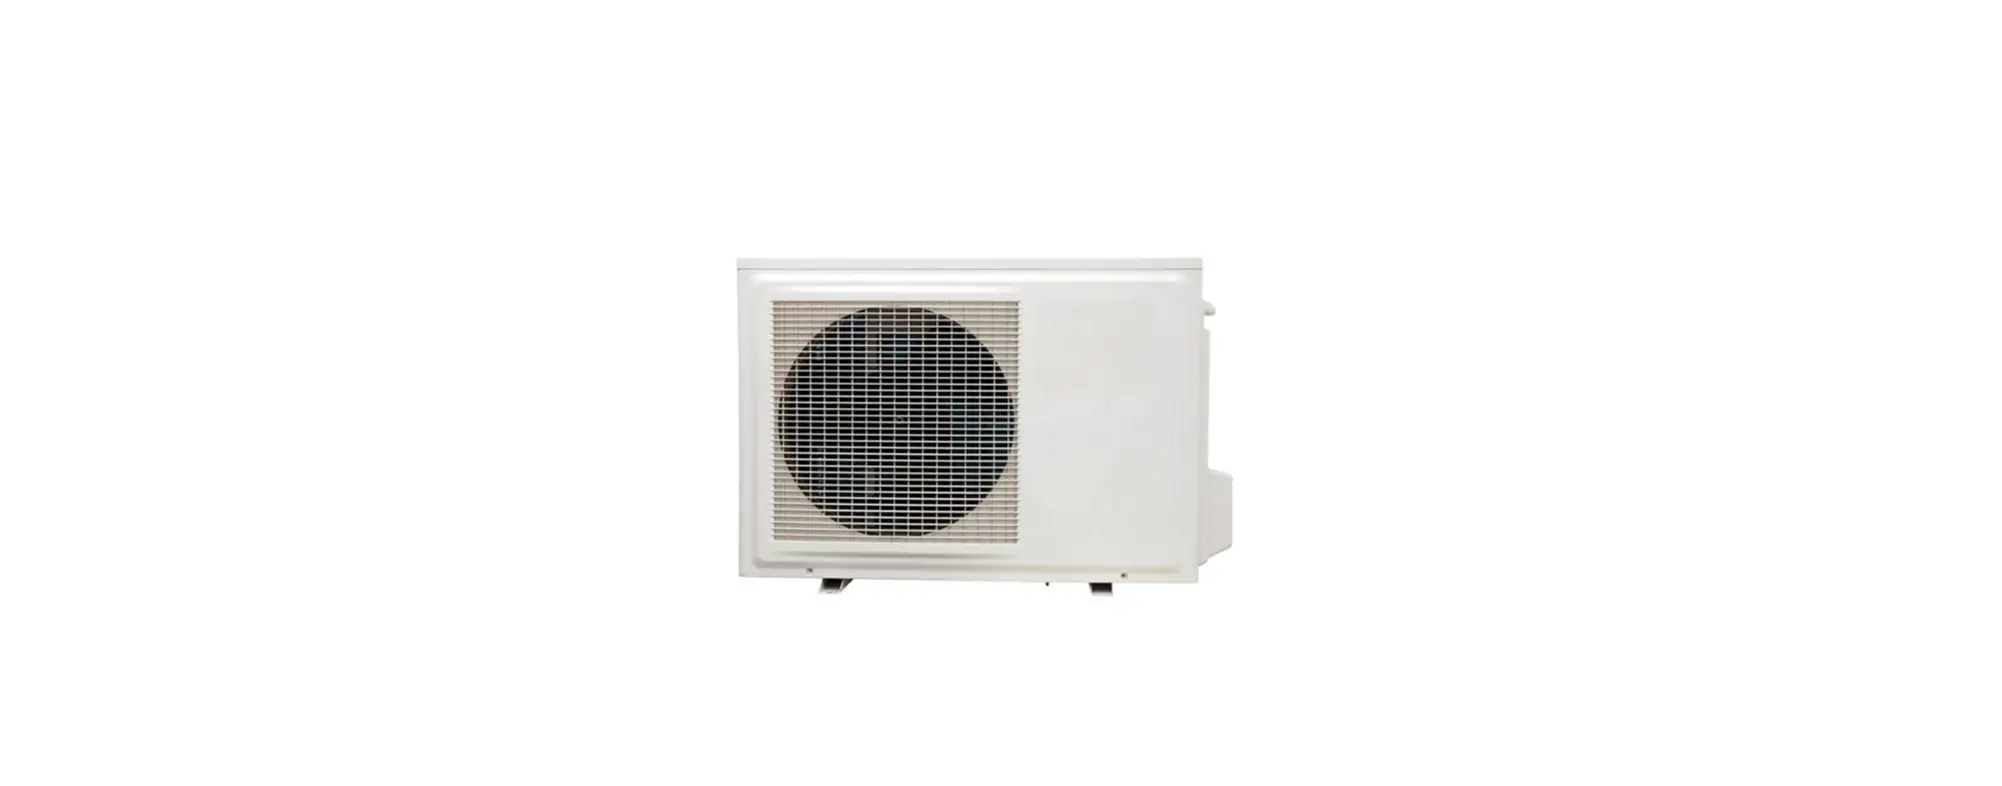 GXH09(2.6)LSA4DL2 Mini Split Heat Pump Systems